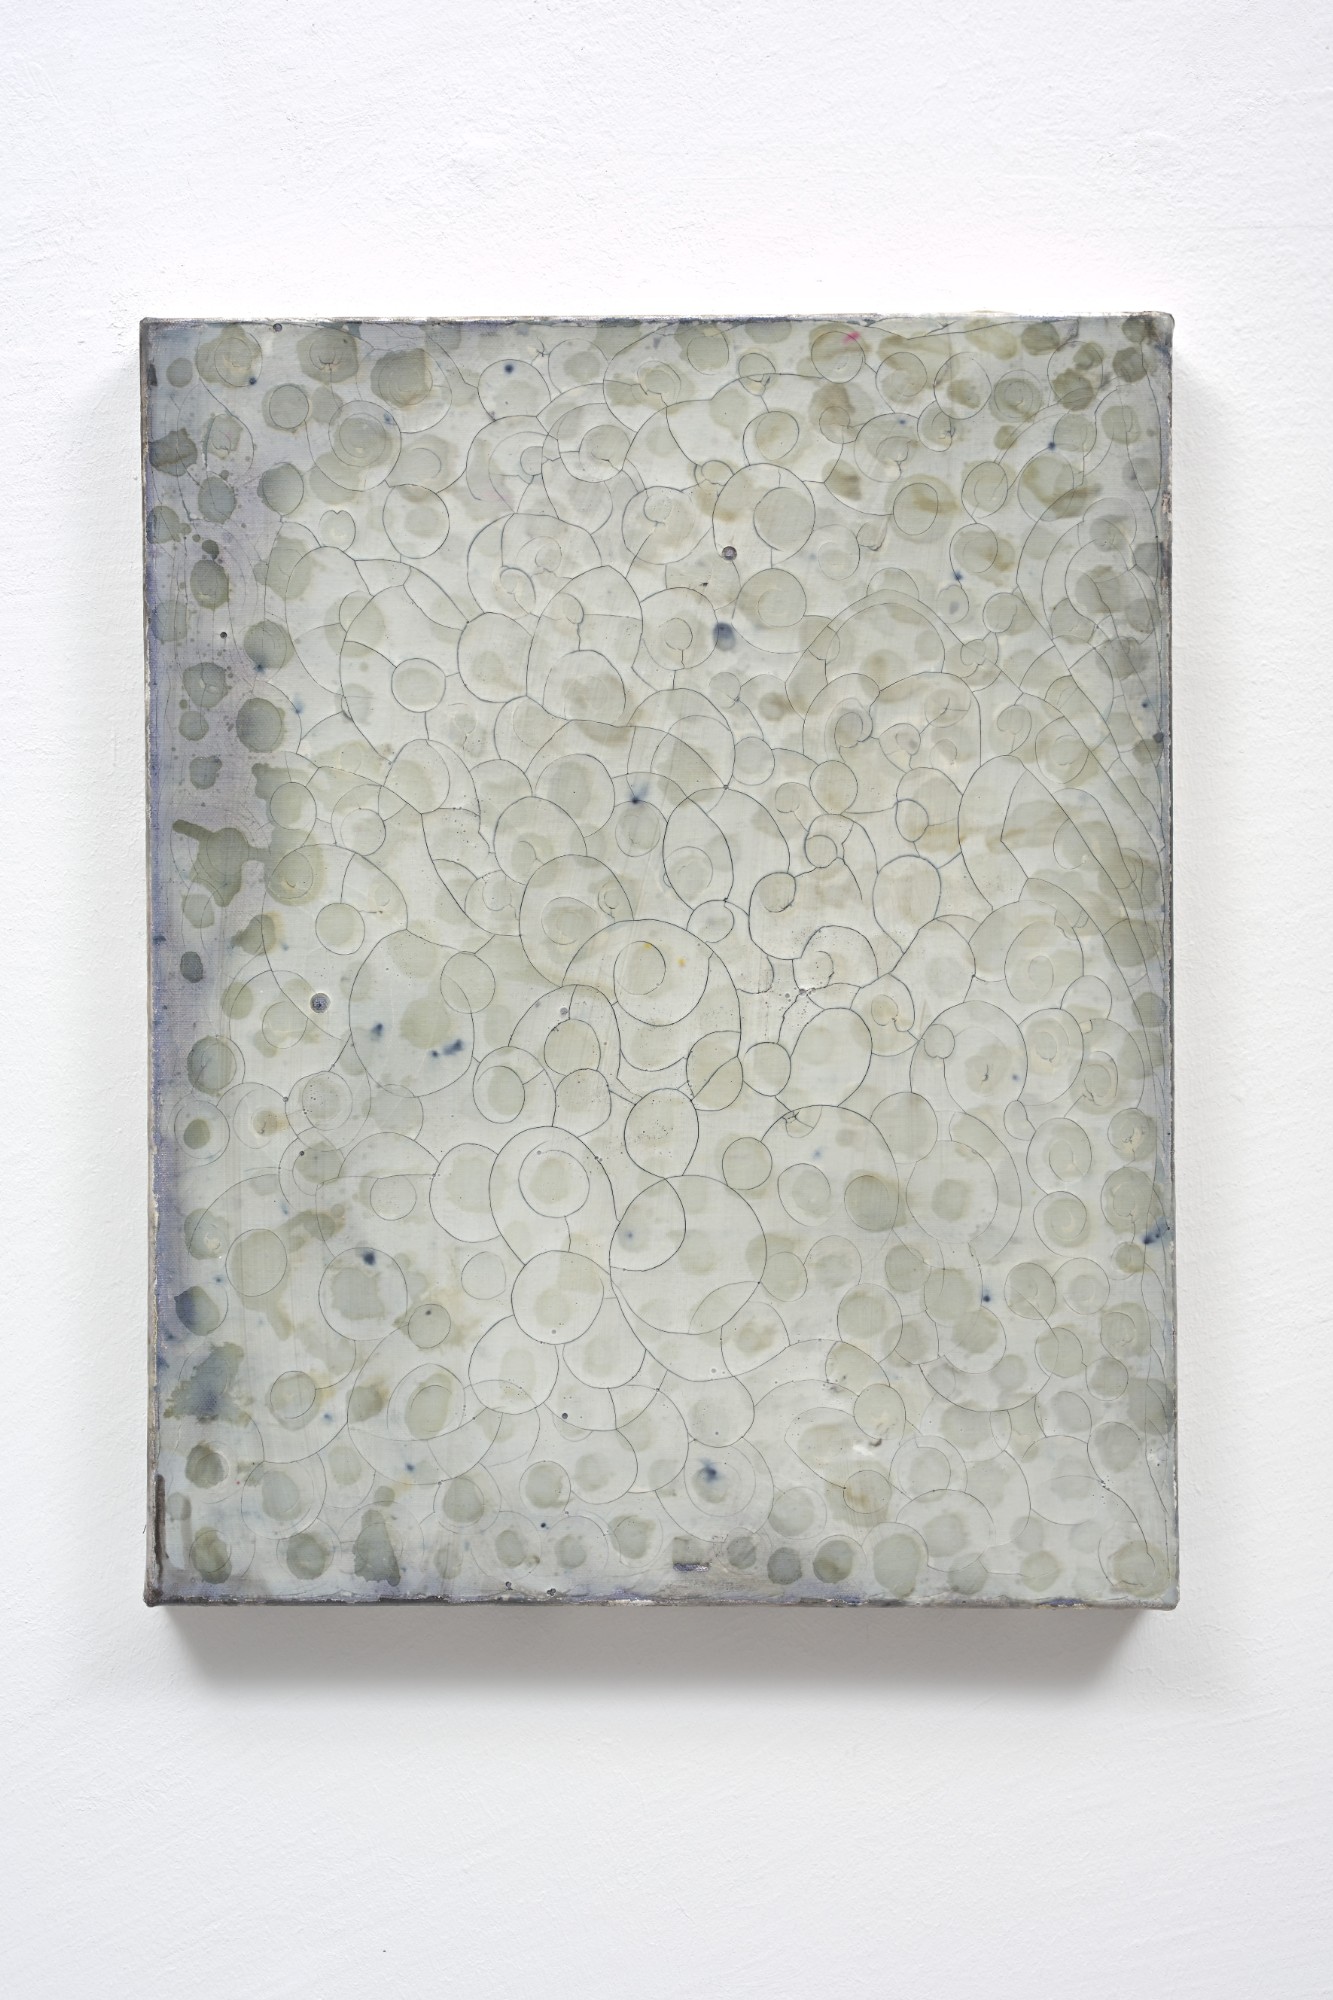 Myriam Holme, gedankengrau, 2018, soap, ink on canvas, 50 x 40 cm